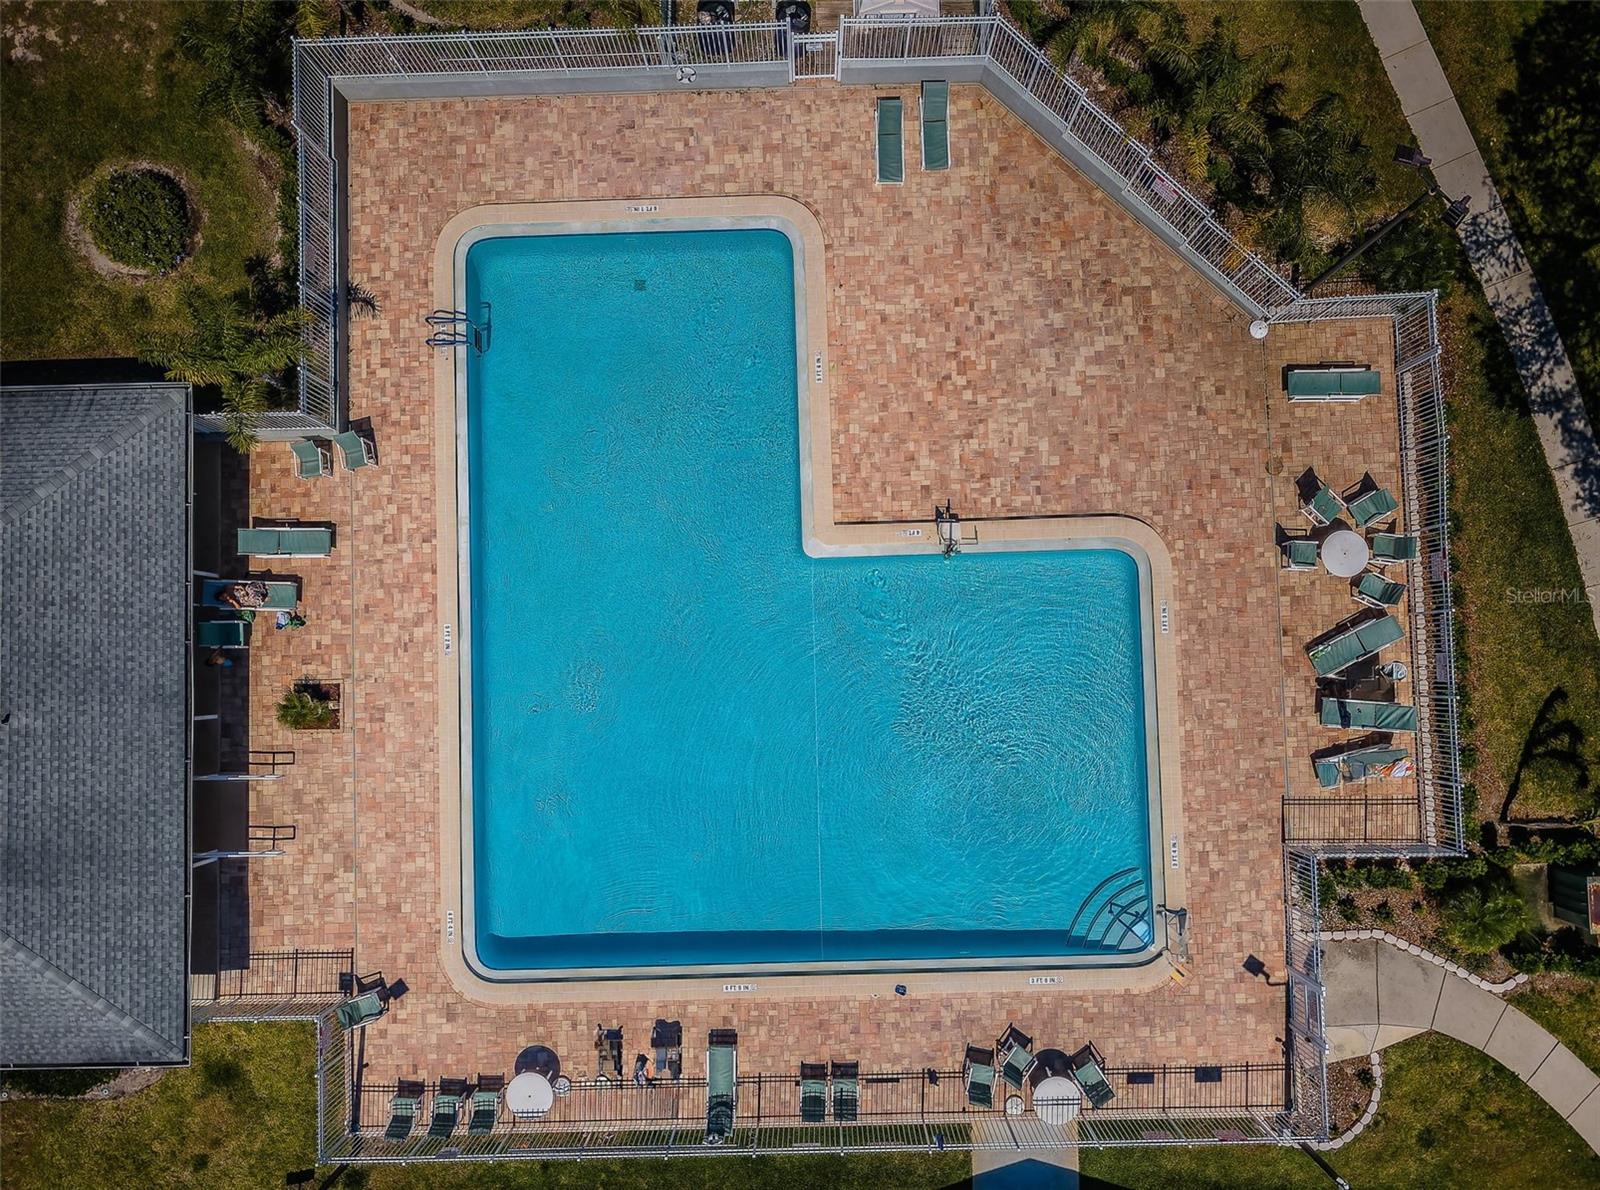 Meadow Oaks community pool